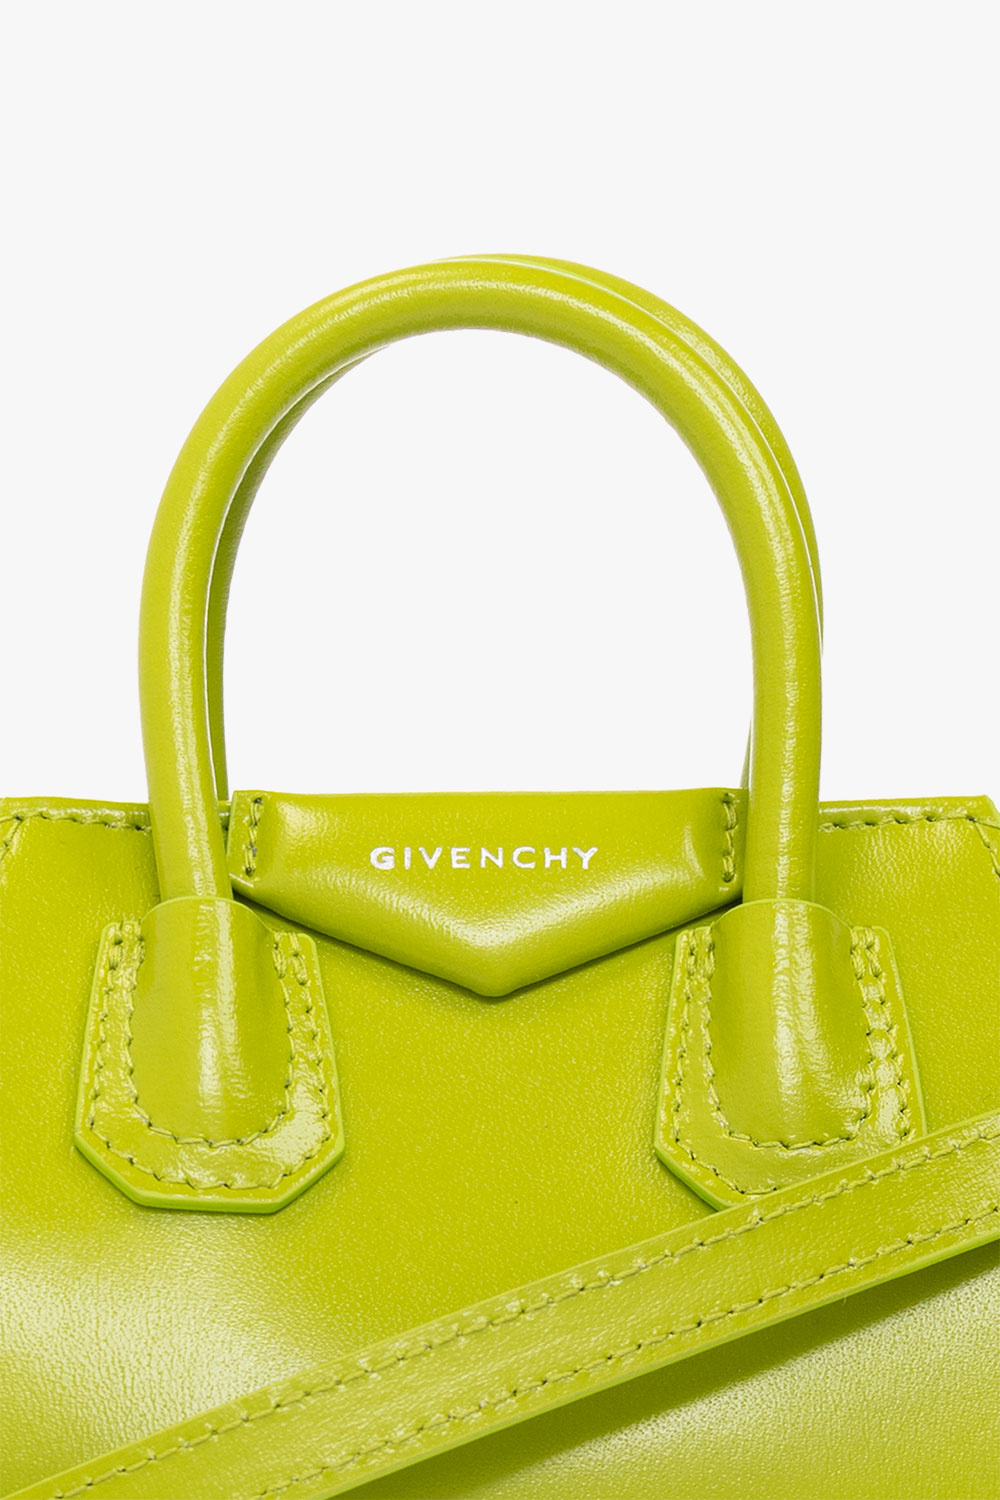 Green 'Antigona Micro' shoulder bag Givenchy - Vitkac TW